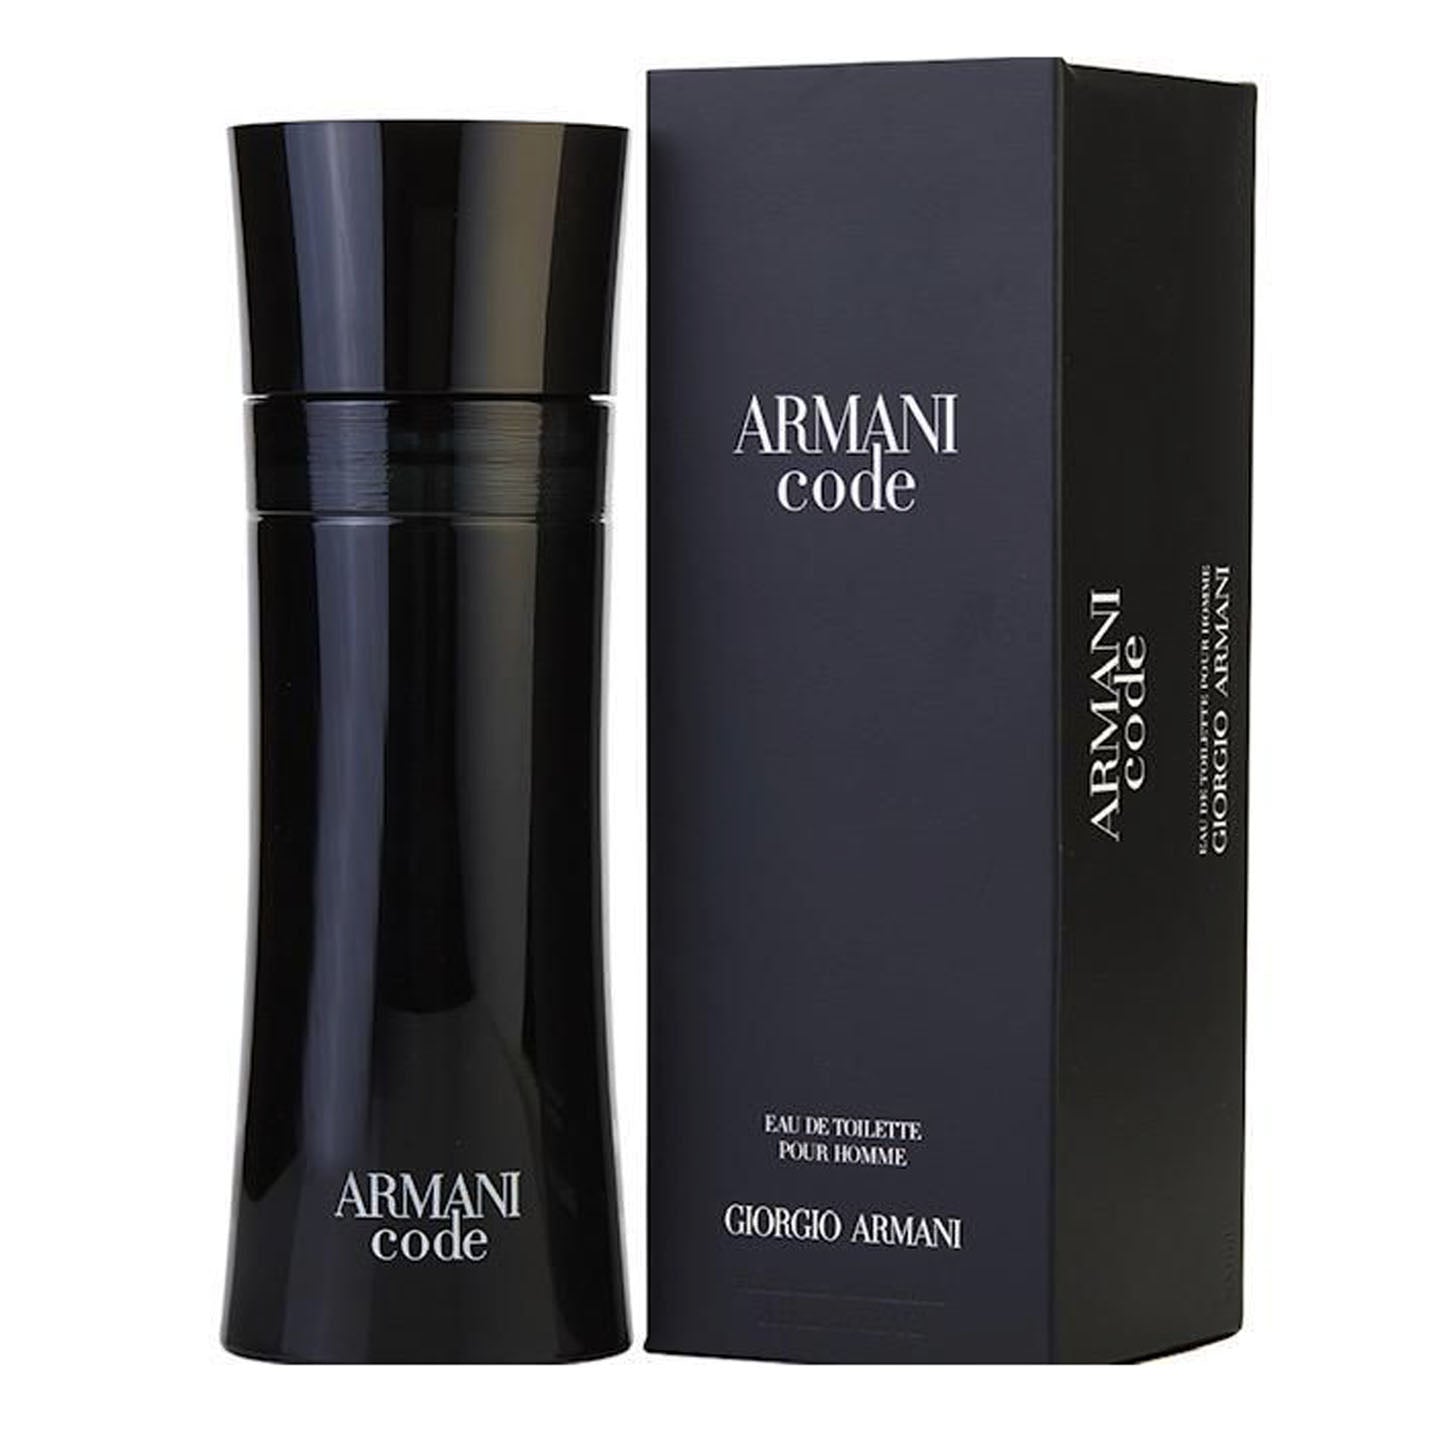 Giorgio Armani Armani Code Eau De Toilette Spray for Men